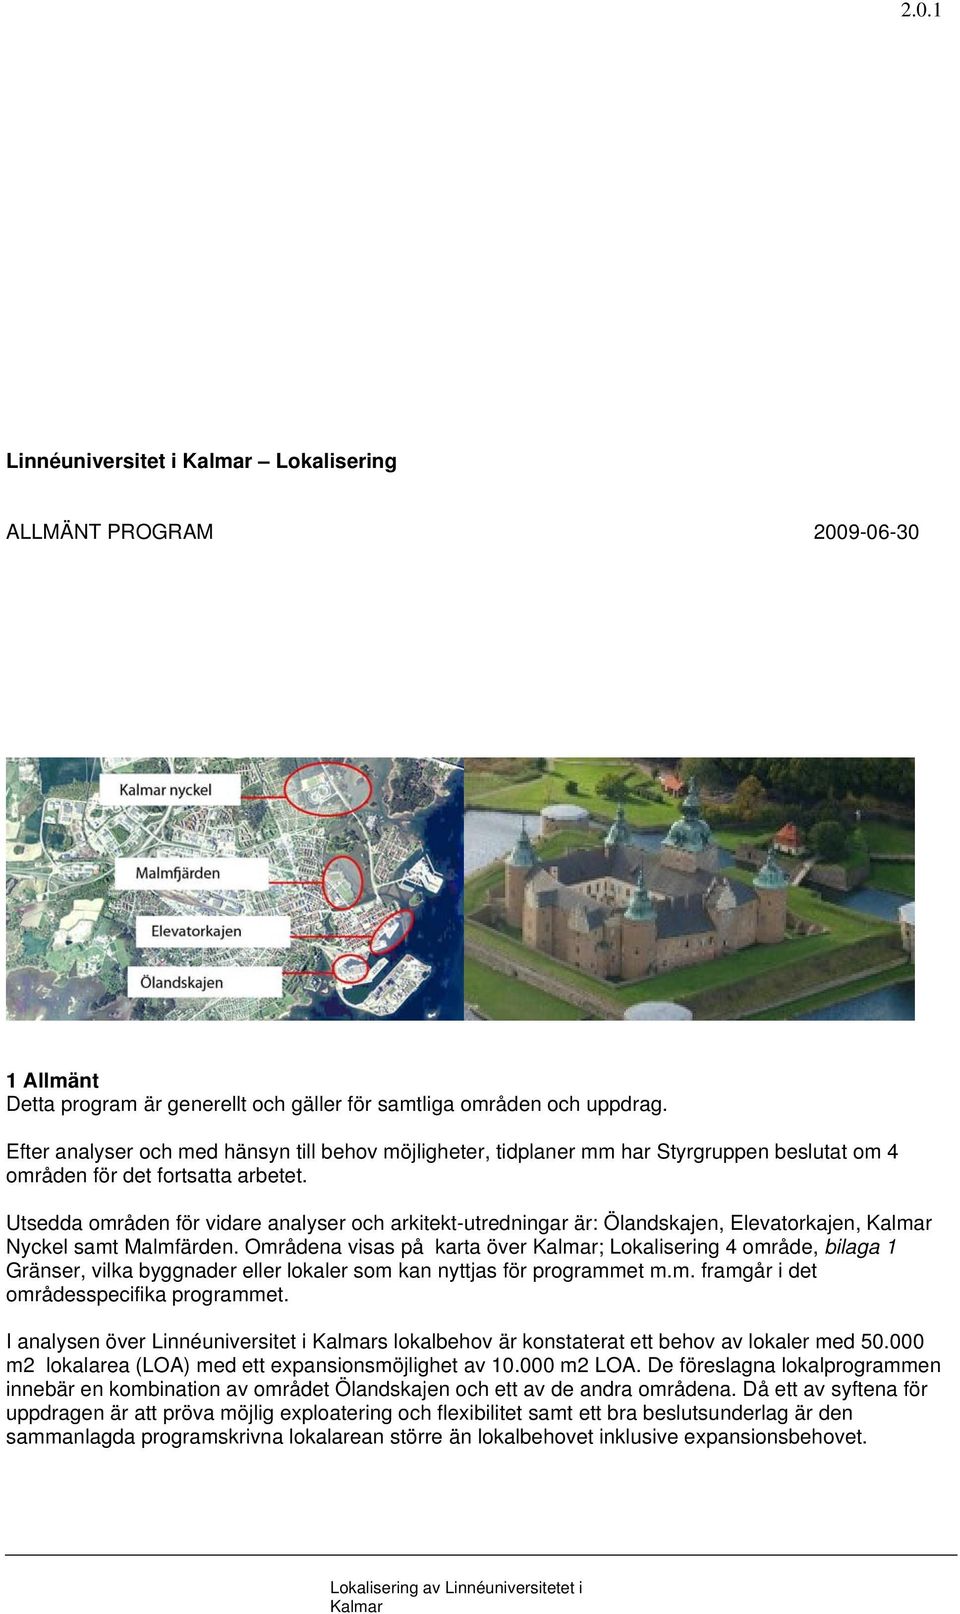 Utsedda områden för vidare analyser och arkitekt-utredningar är: Ölandskajen, Elevatorkajen, Nyckel samt Malmfärden.